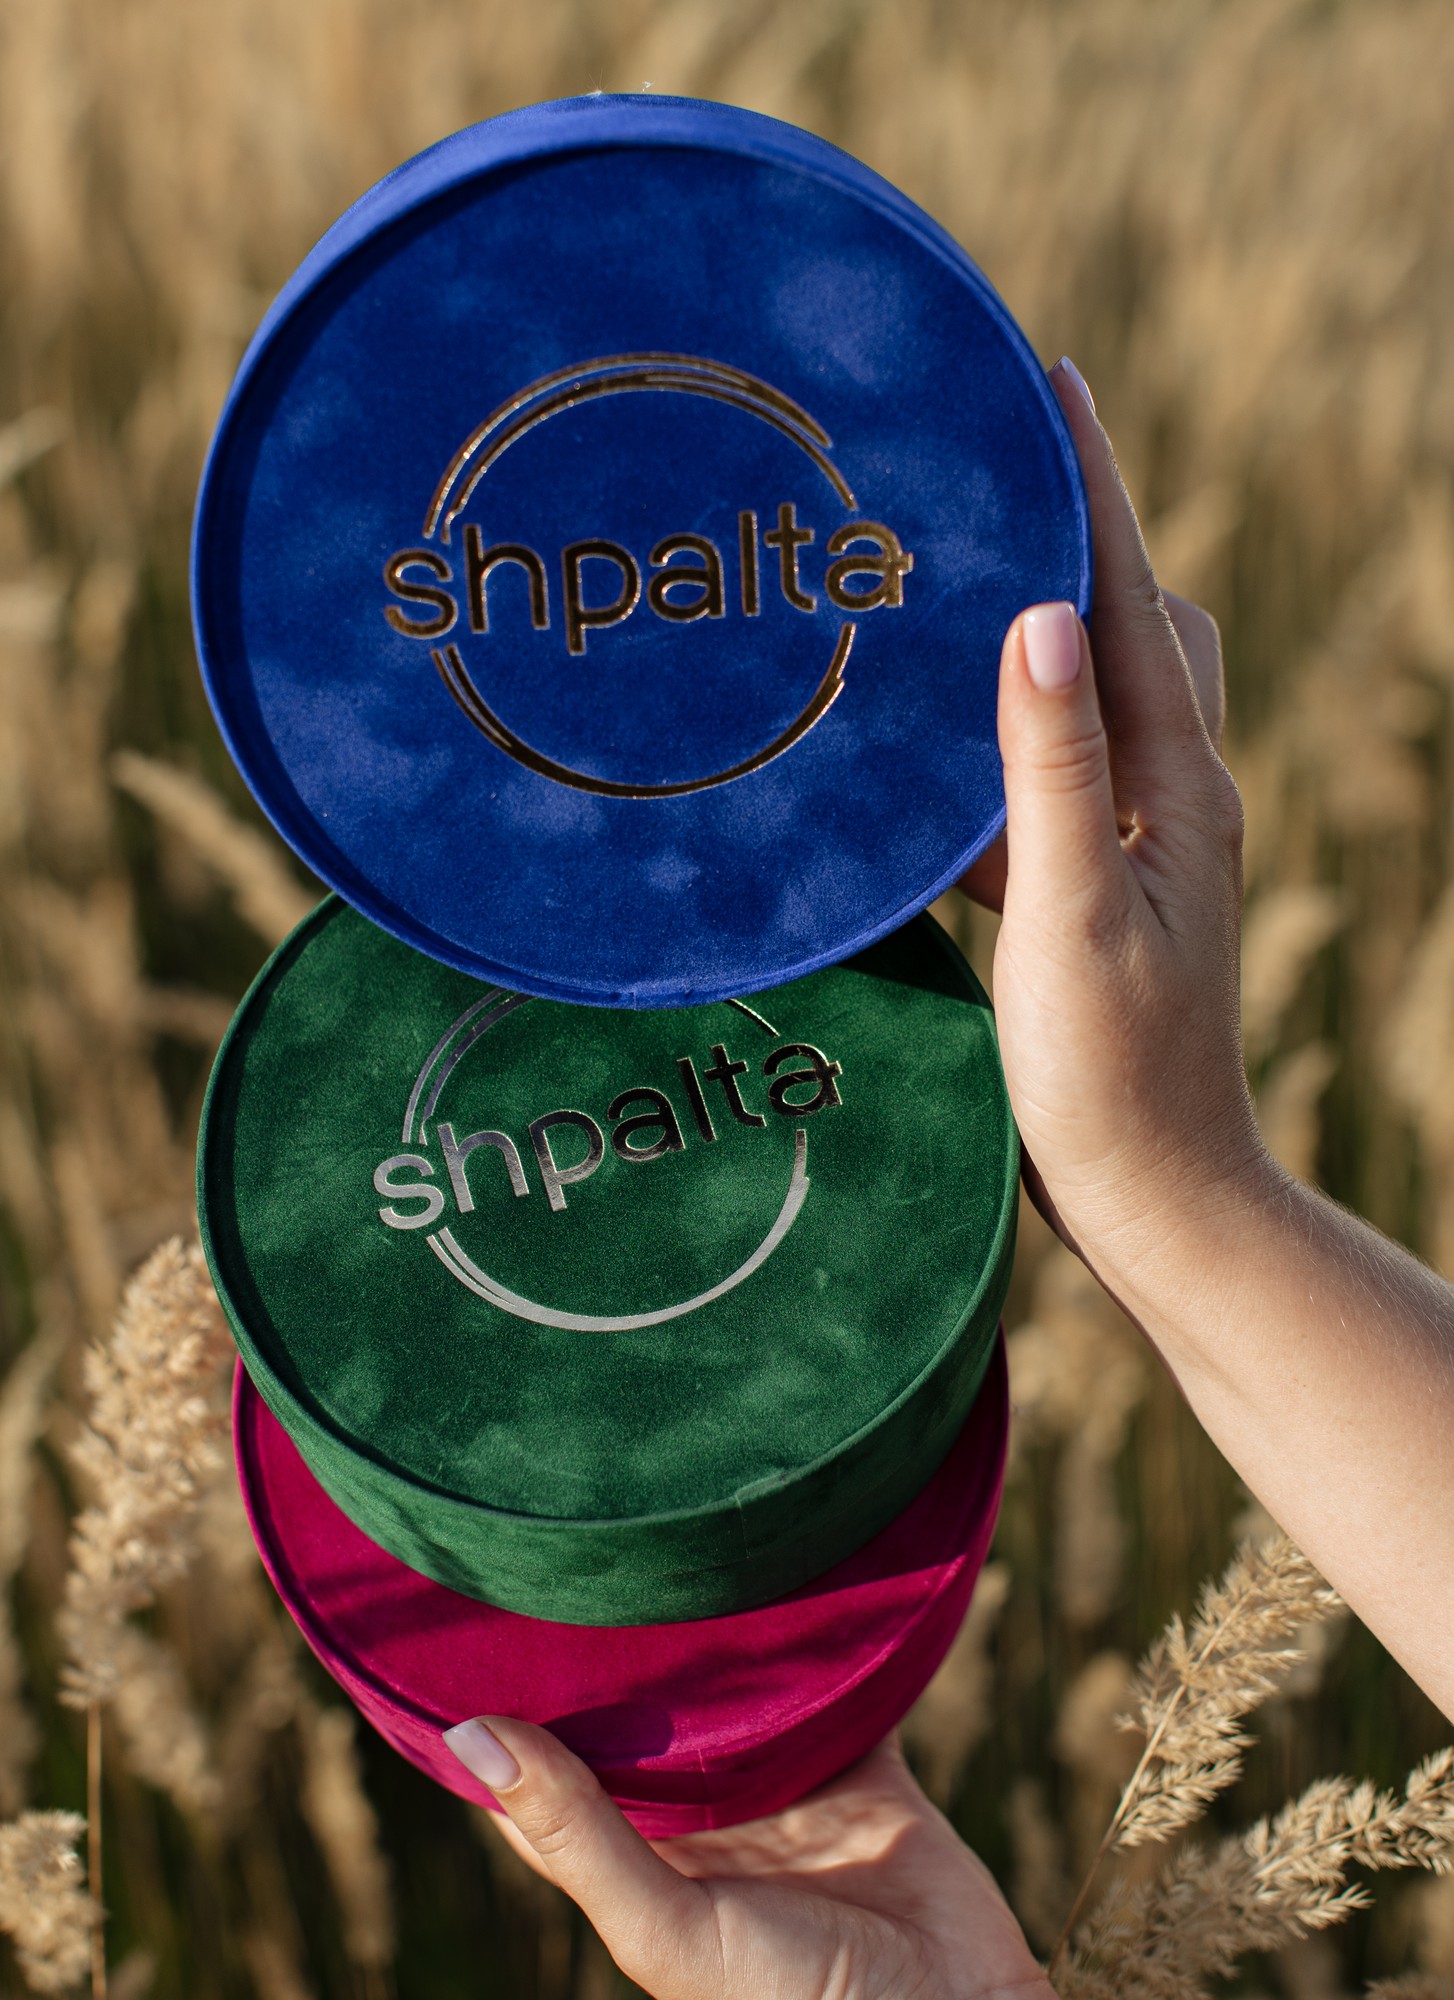 Shpalta branded velvet gift boxes of round shape 16*7